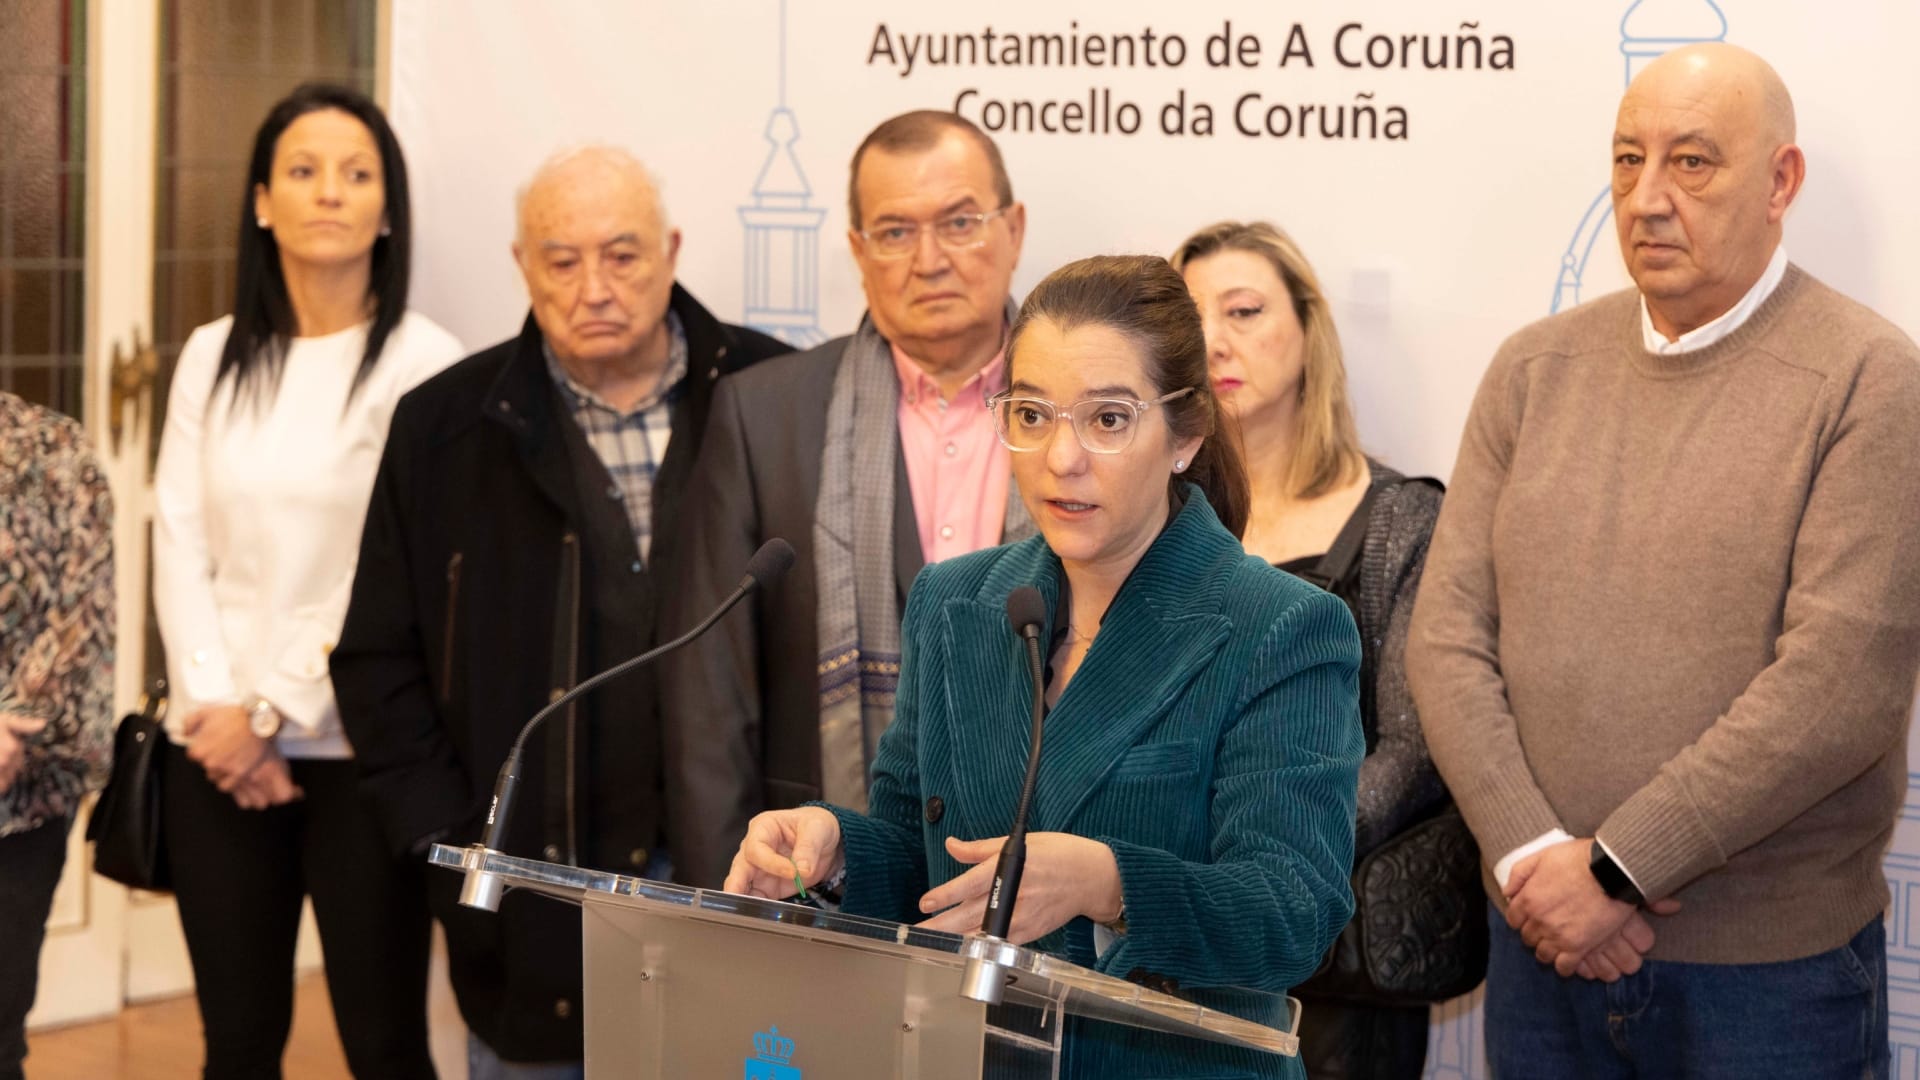 La alcaldesa de A Coruña, Inés Rey, en rueda de prensa | CONCELLO DA CORUÑA